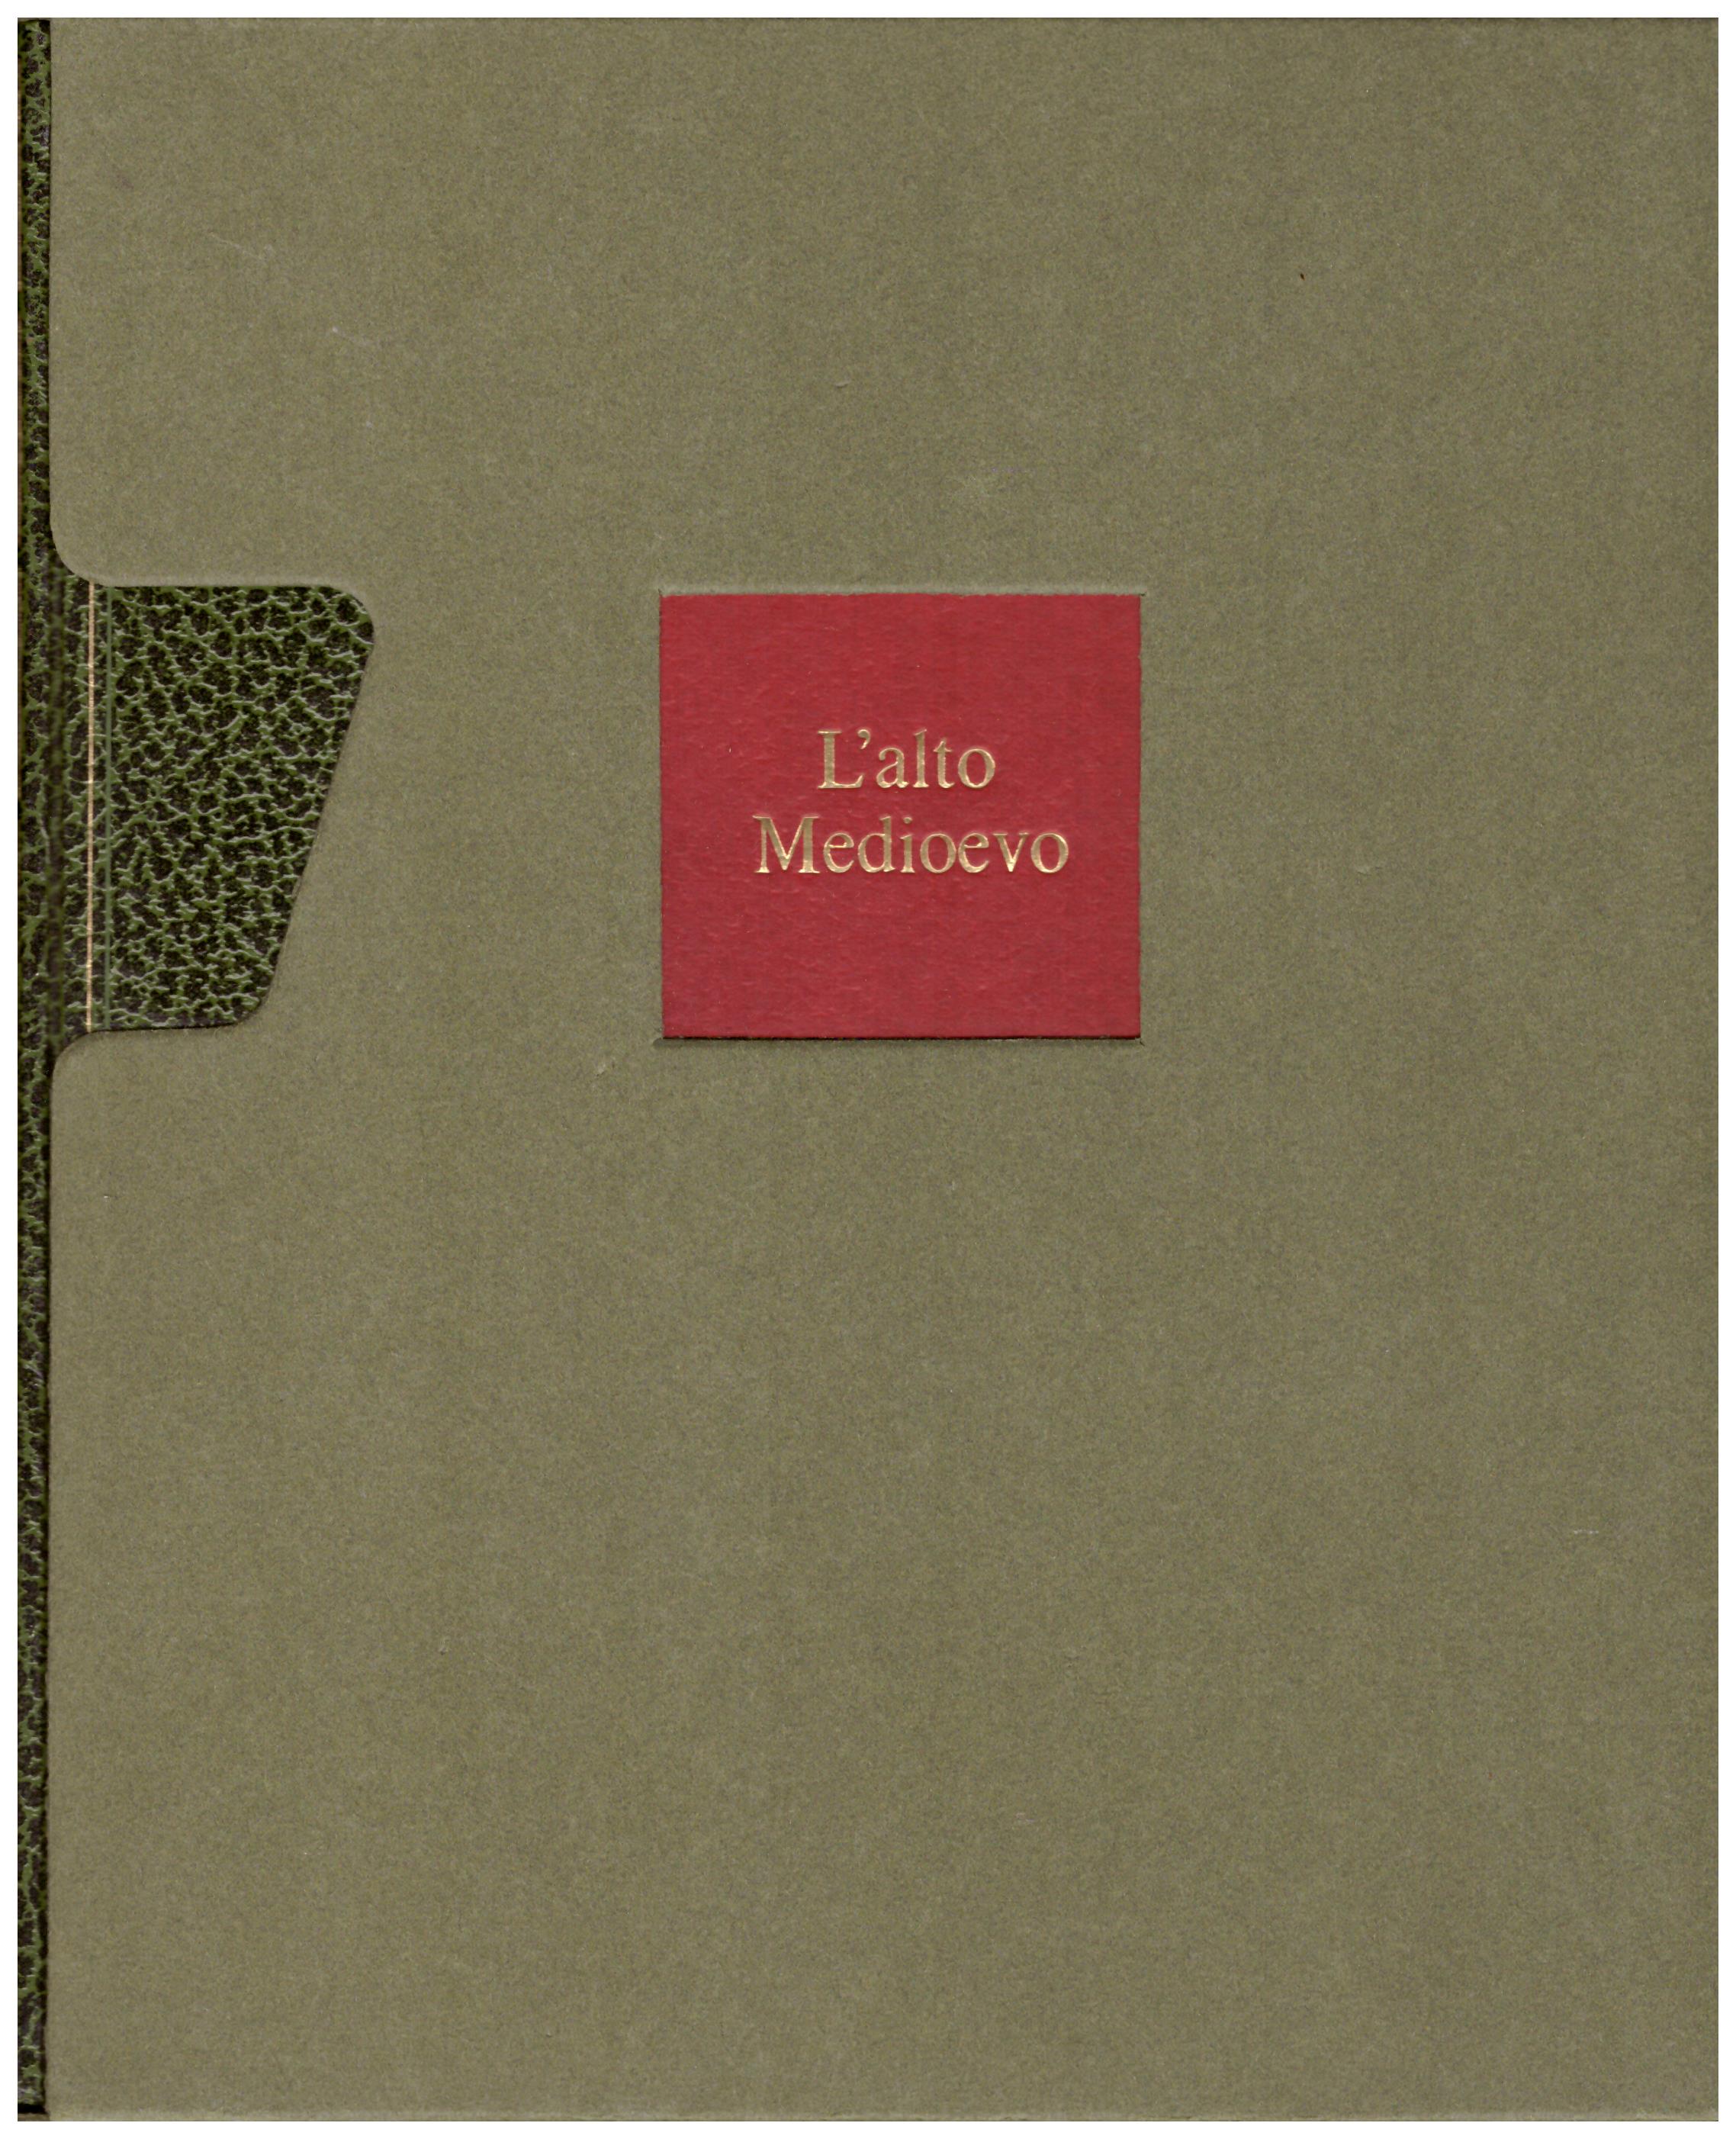 Titolo: L'arte nel mondo n.10, L'alto medioevo  Autore: Francois Souchal Editore: Rizzoli, 1970